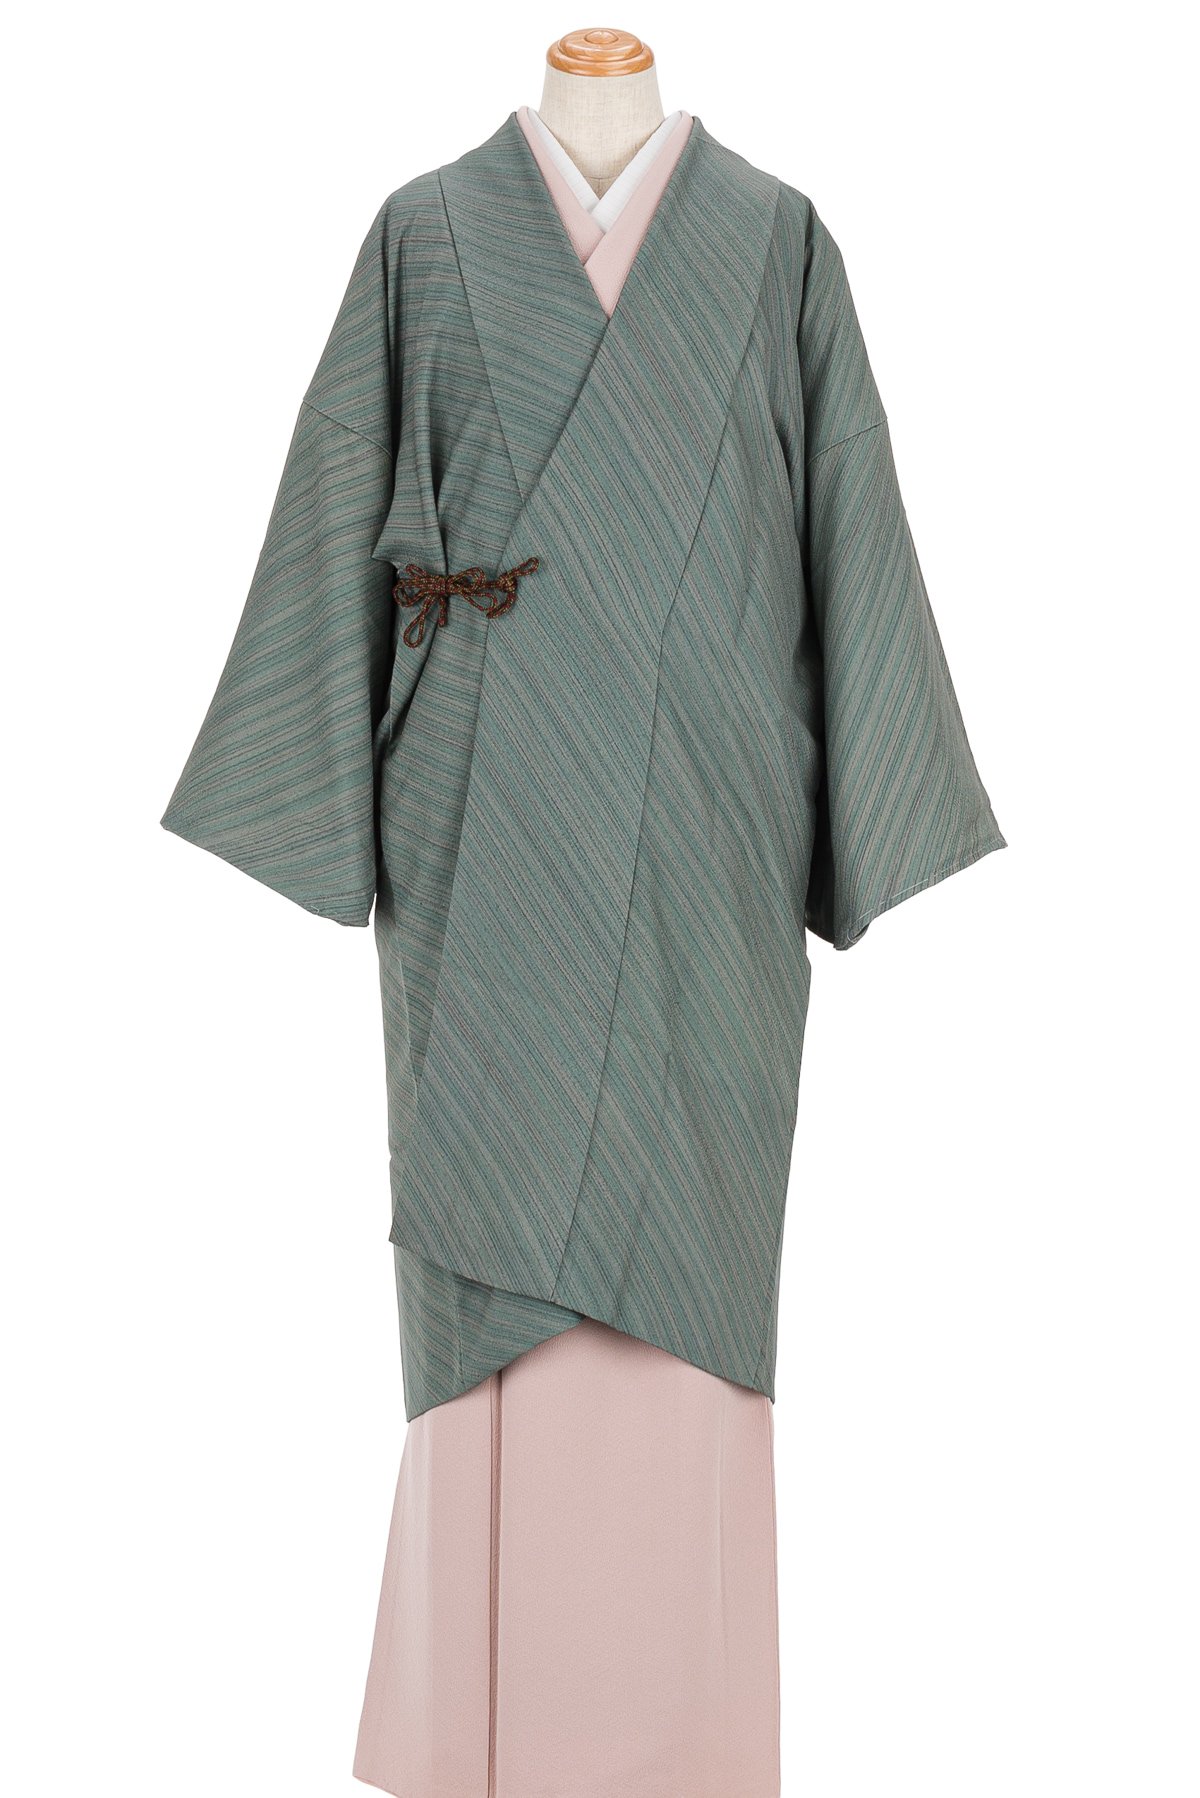 ナチュラ [新品、未使用] 正絹羽織り K3-13 - 通販 - www.bonkulovic.com